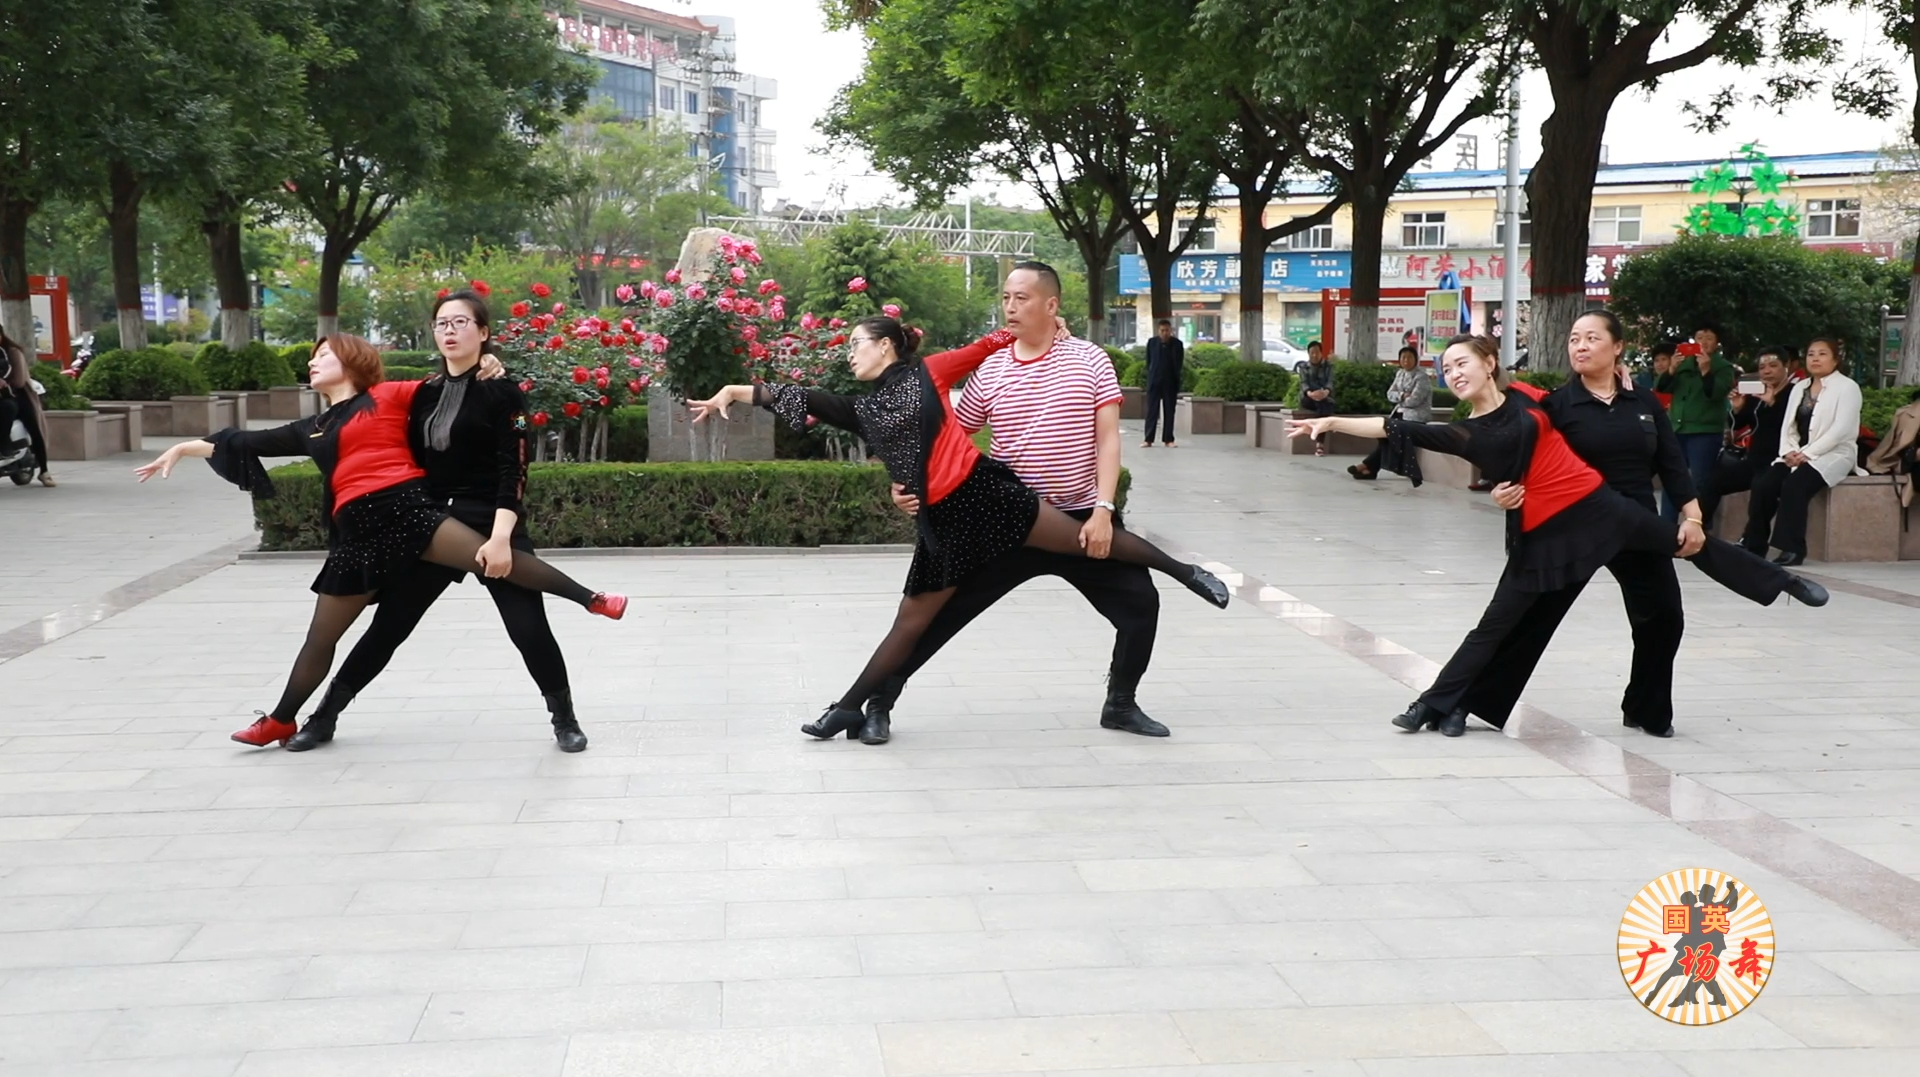 2019流行的双人对跳广场舞,音乐悠美舞姿大气,适合夫妻一起跳